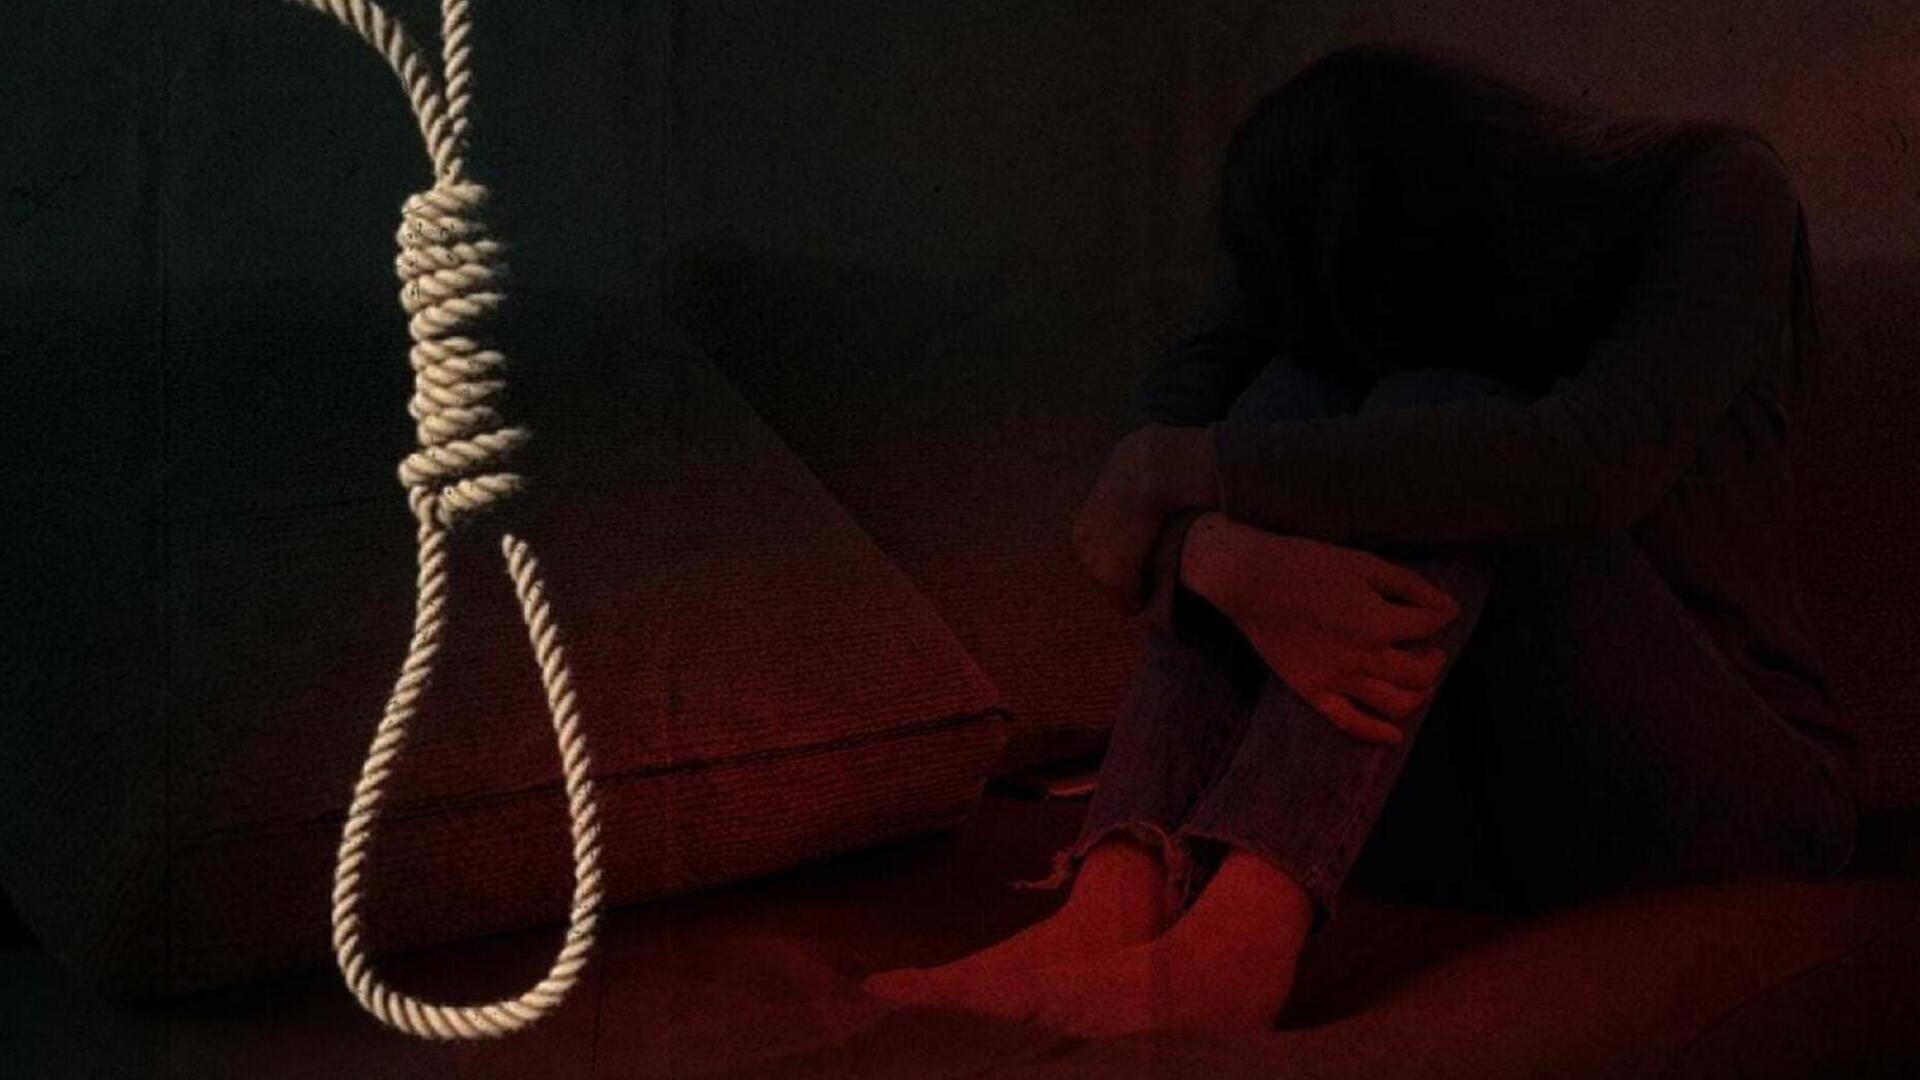 बिहार: मां ने मोबाइल पर बात करने से मना किया, किशोरी ने फांसी लगाकर आत्महत्या की